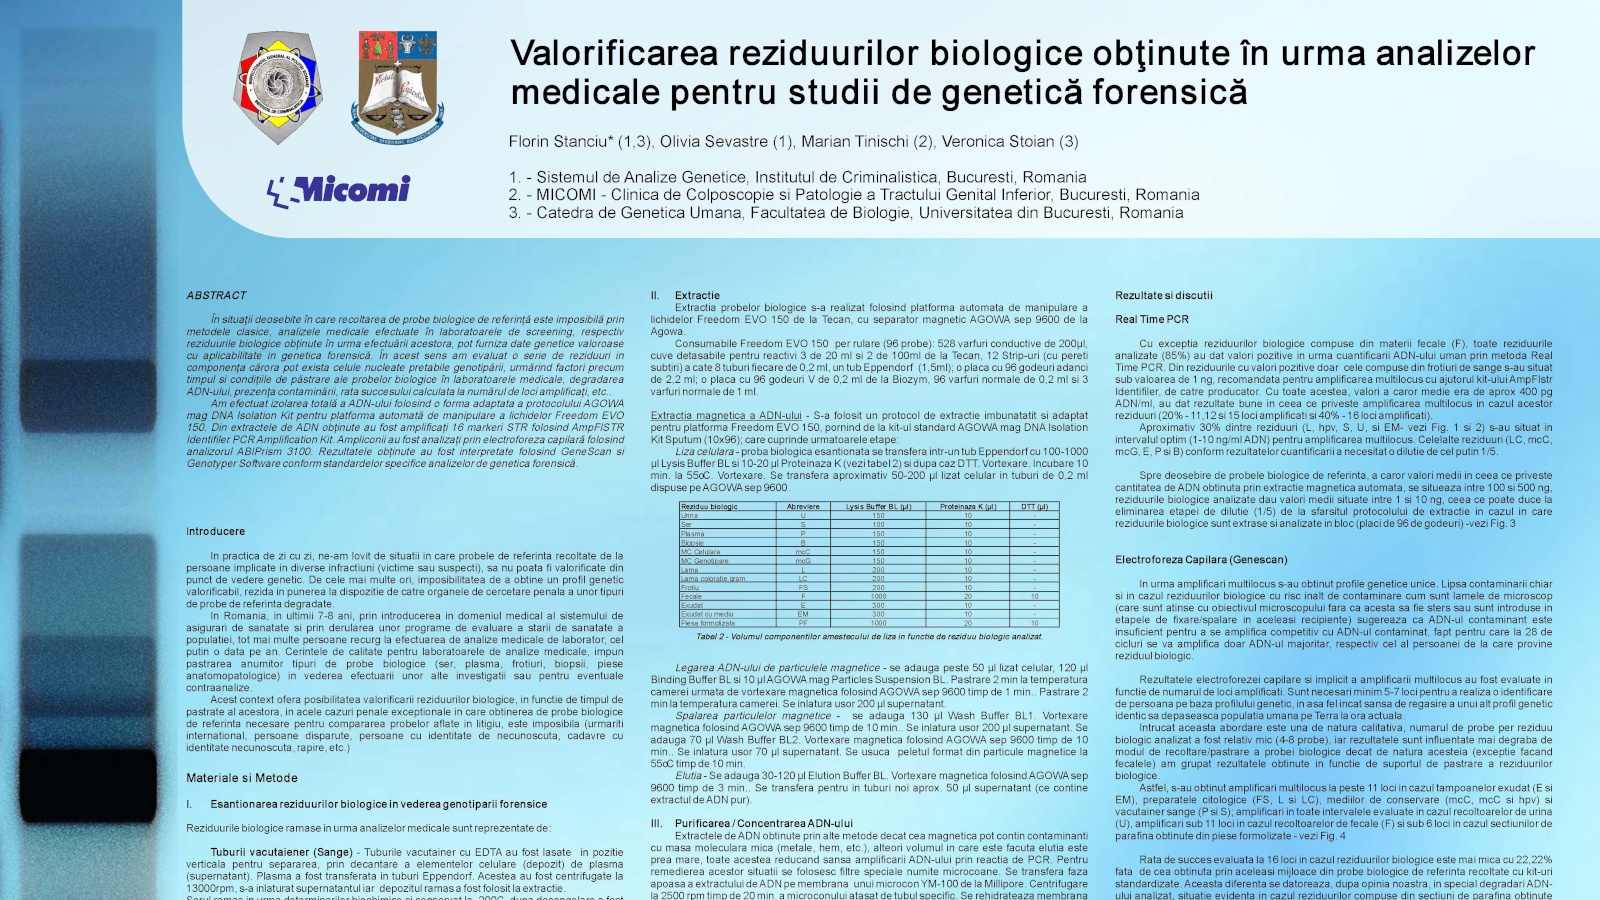 Poster Valorificarea Reziduurilor Biologice Obtinute în Urma Analizelor Medicale (...)